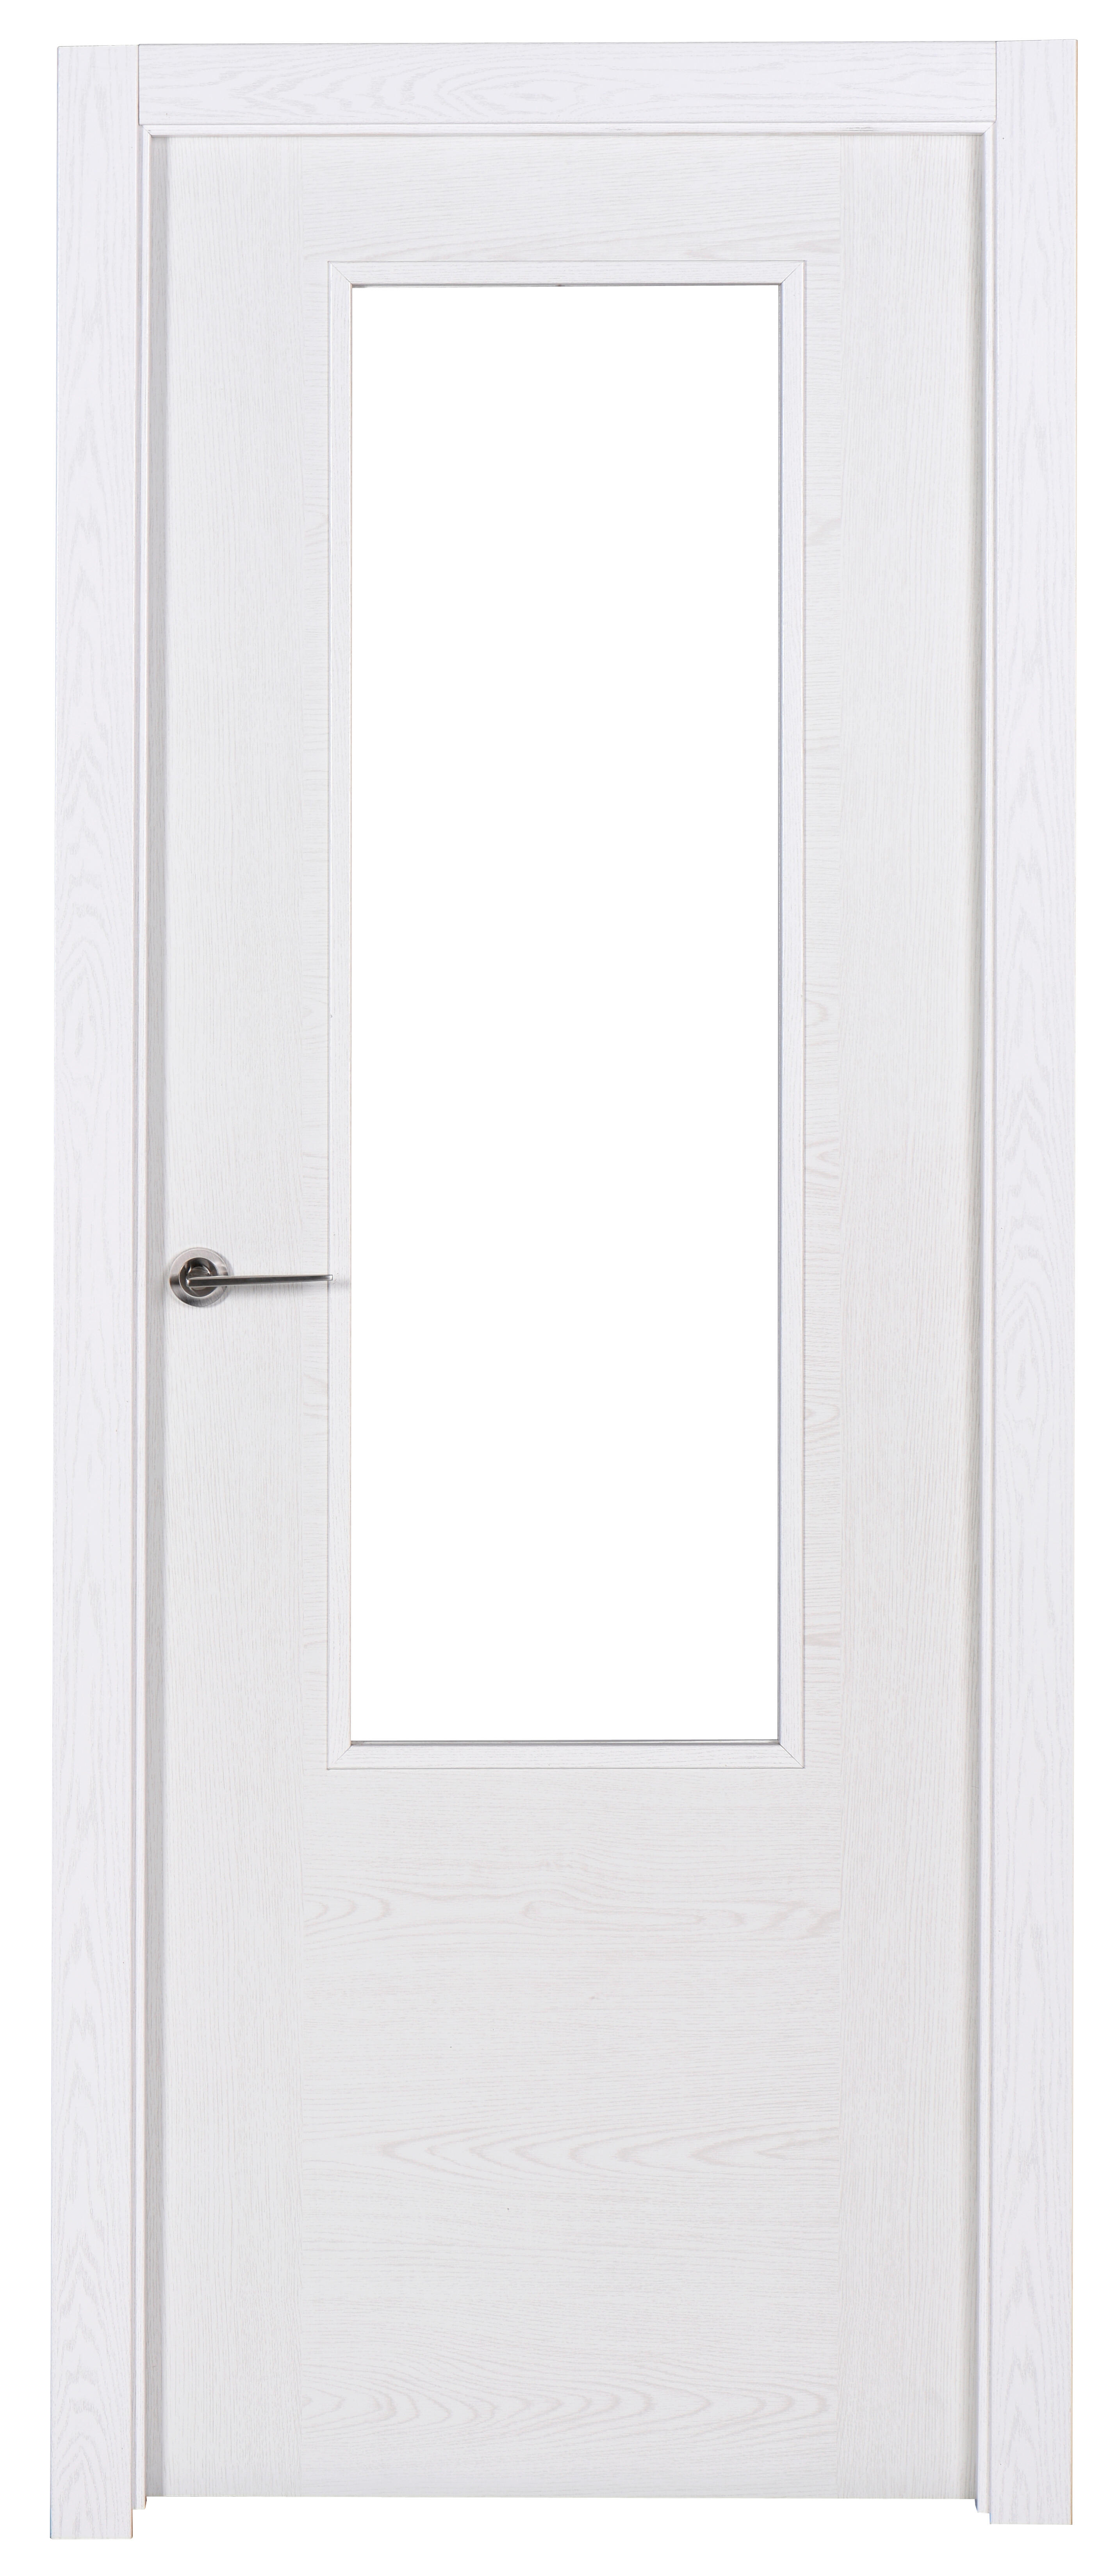 Puerta canarias blanco apertura derecha con cristal 72.5cm